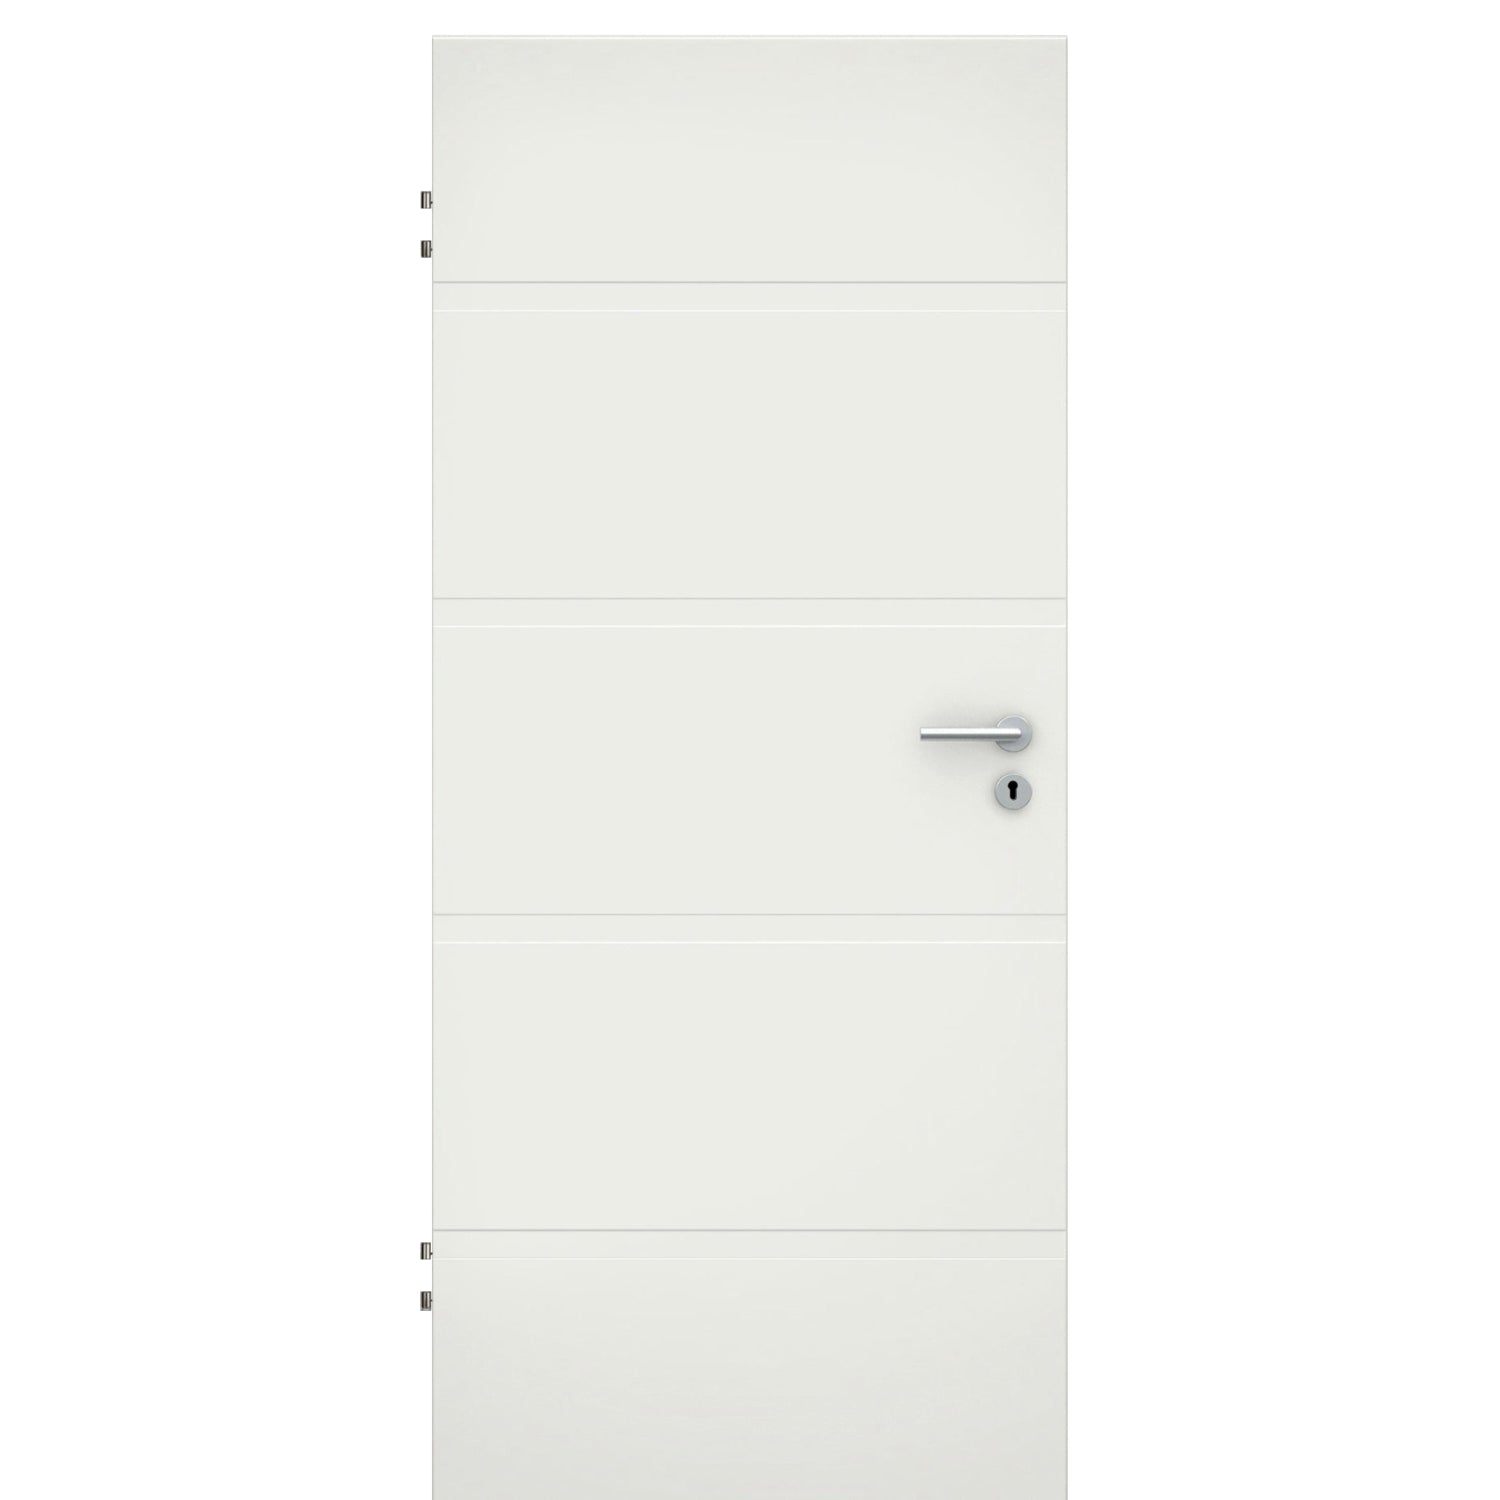 Wohnungseingangstür soft-weiß 4 breite Rillen Eckkante SK2 / KK3 - Modell Designtür QB41